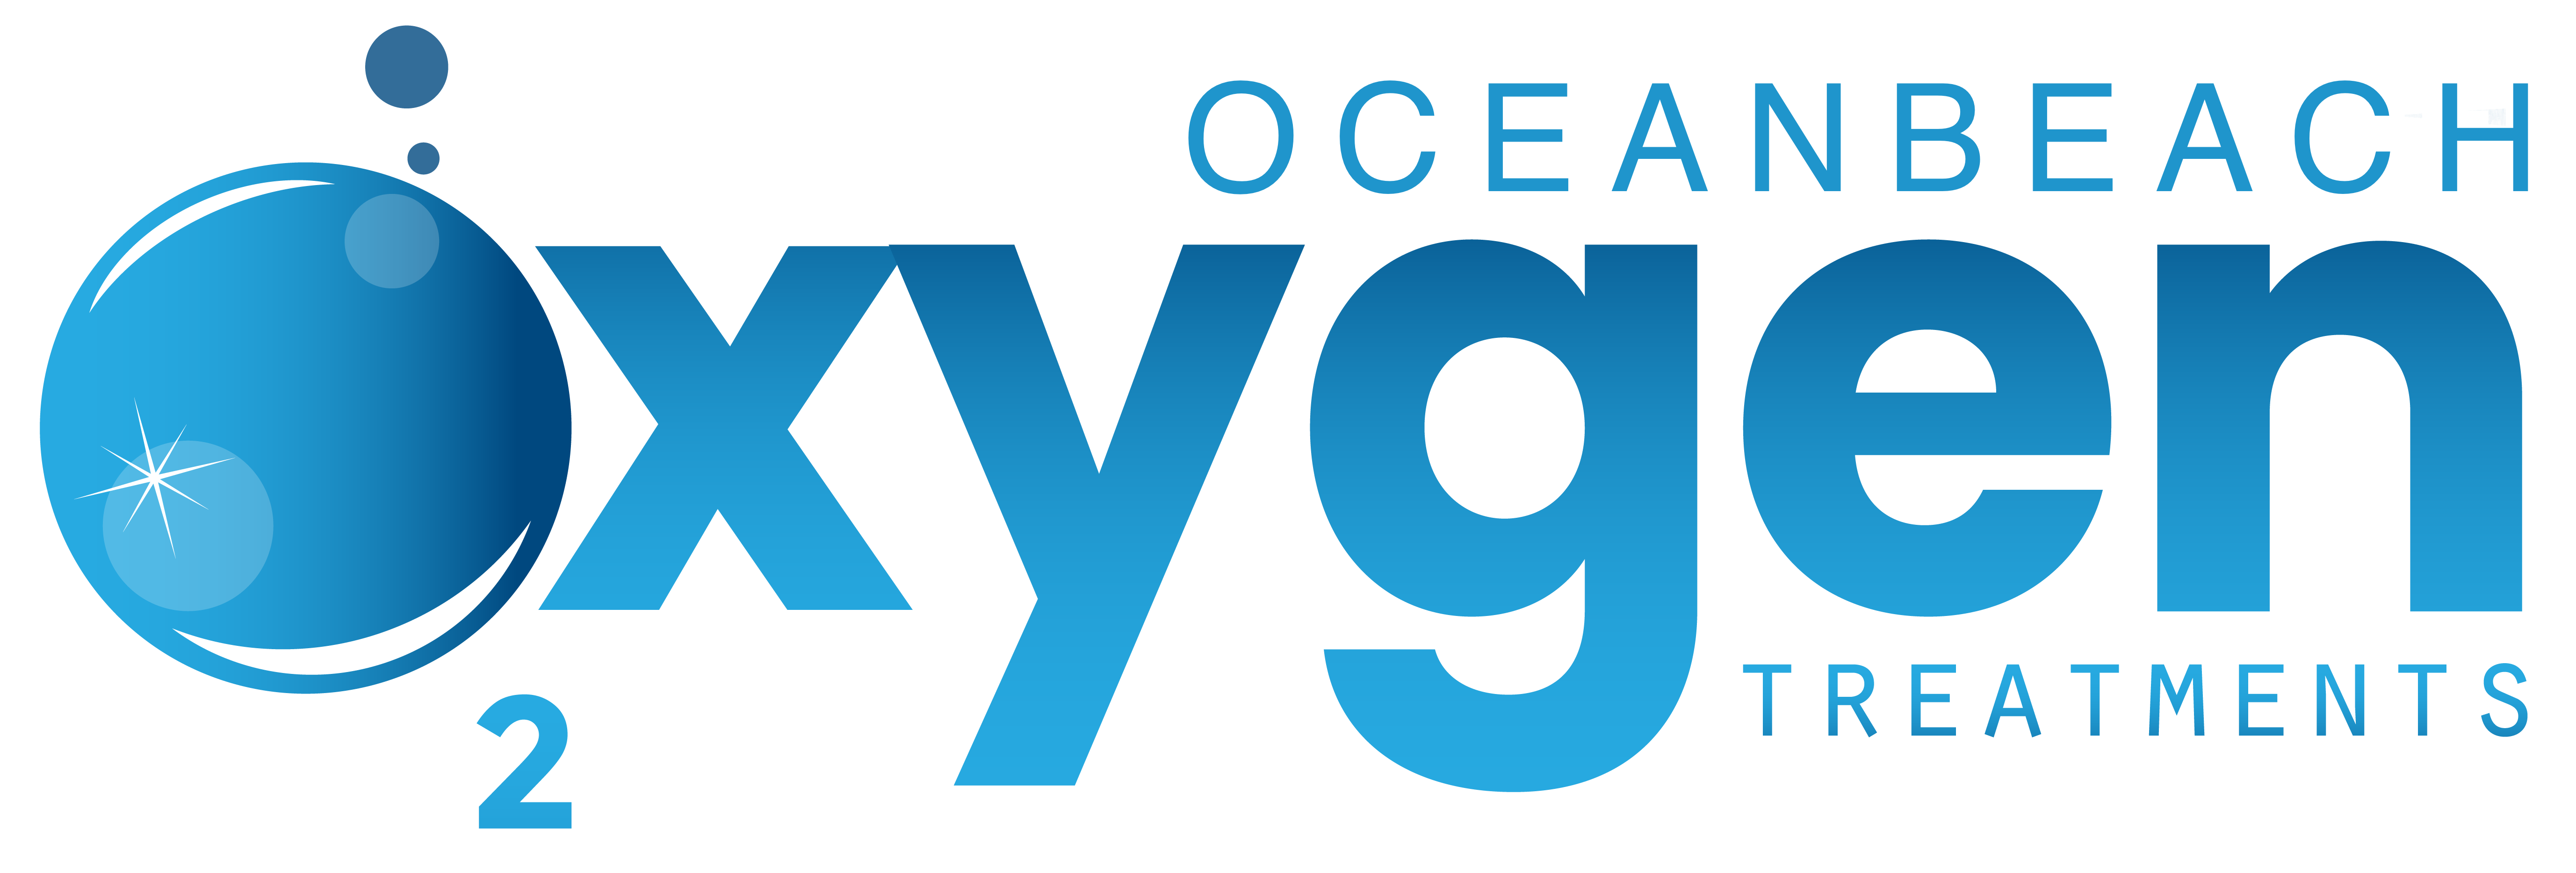 Oceanbeach Oxygen